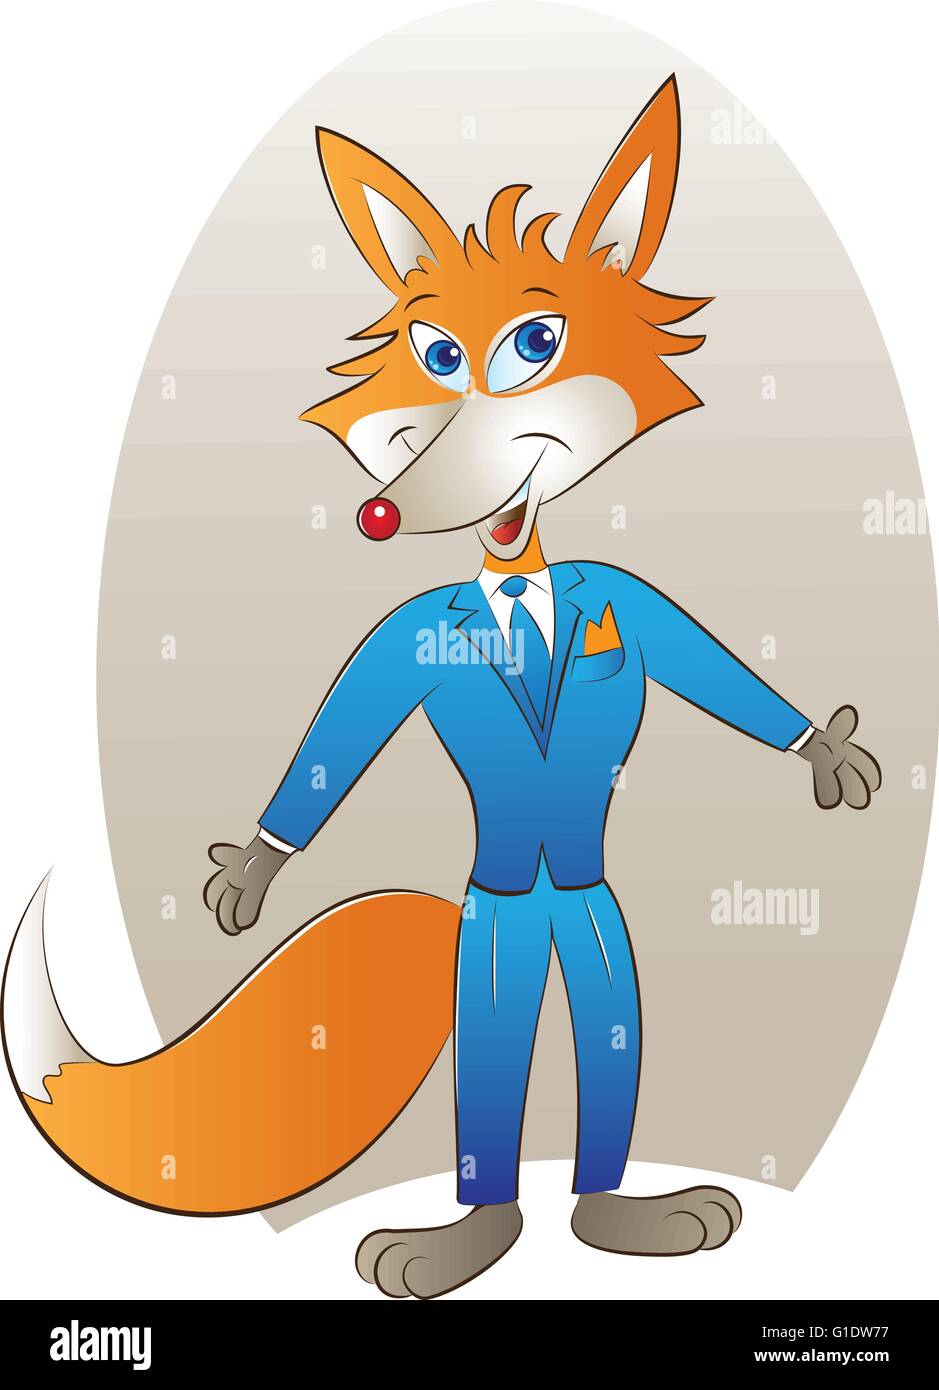 Vector illustration of a cute red fox mascot Illustration de Vecteur